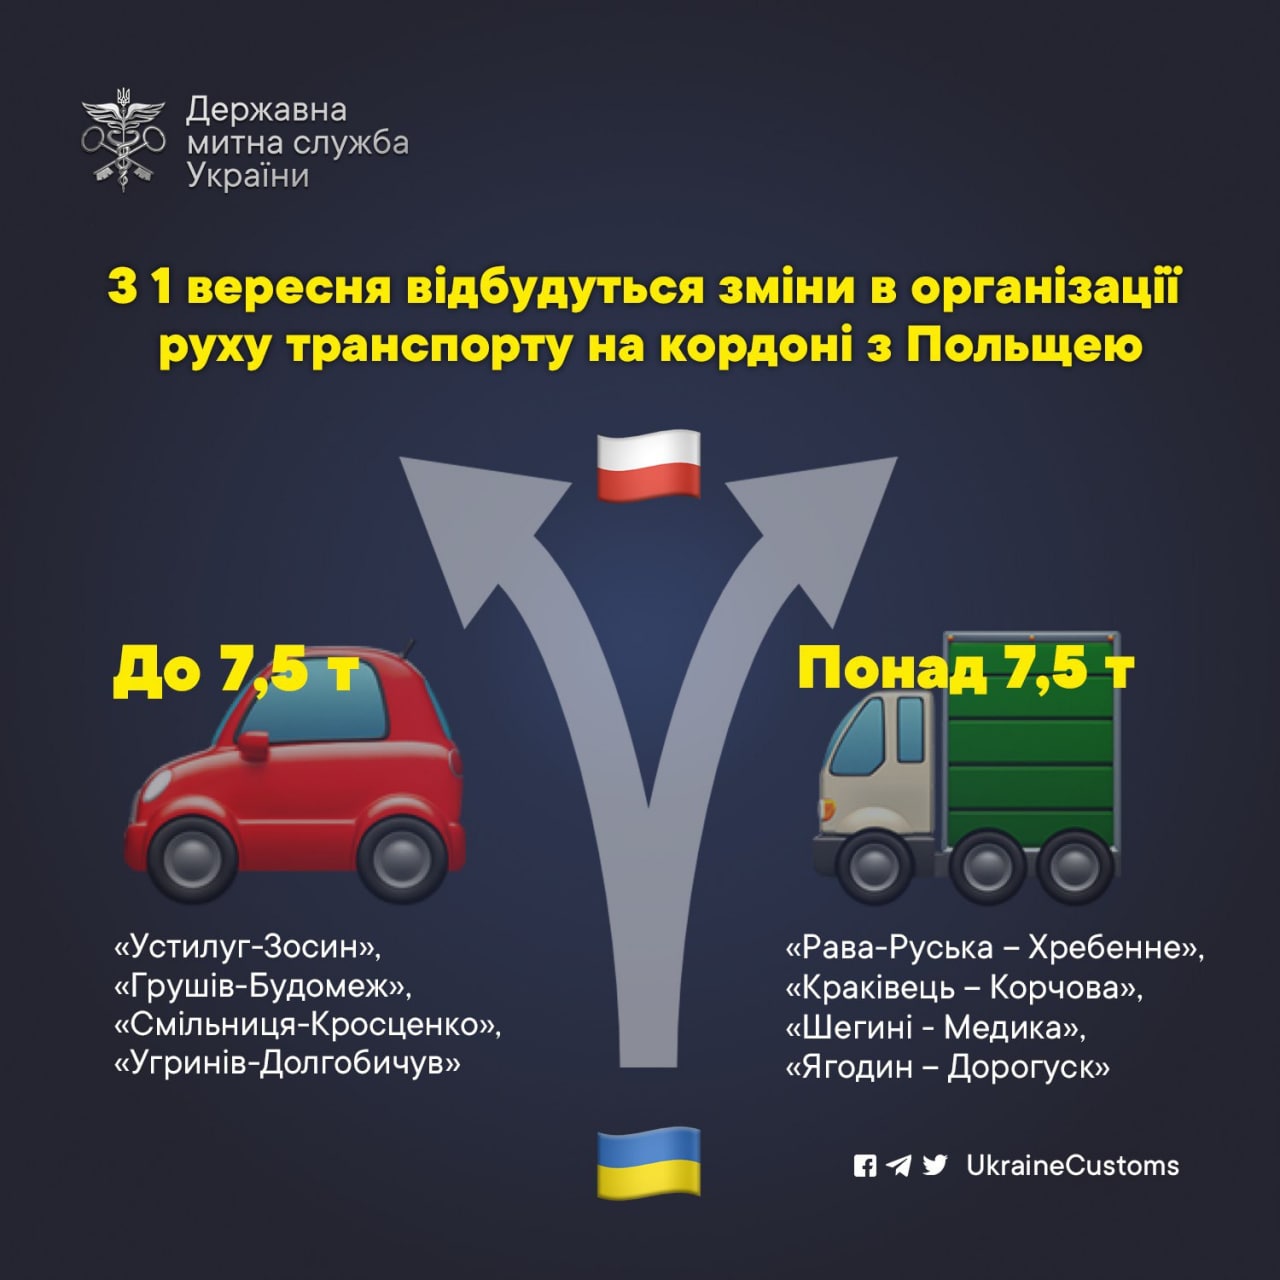 Правила въезда в Польшу на авто для украинцев изменятся: как именно? 1